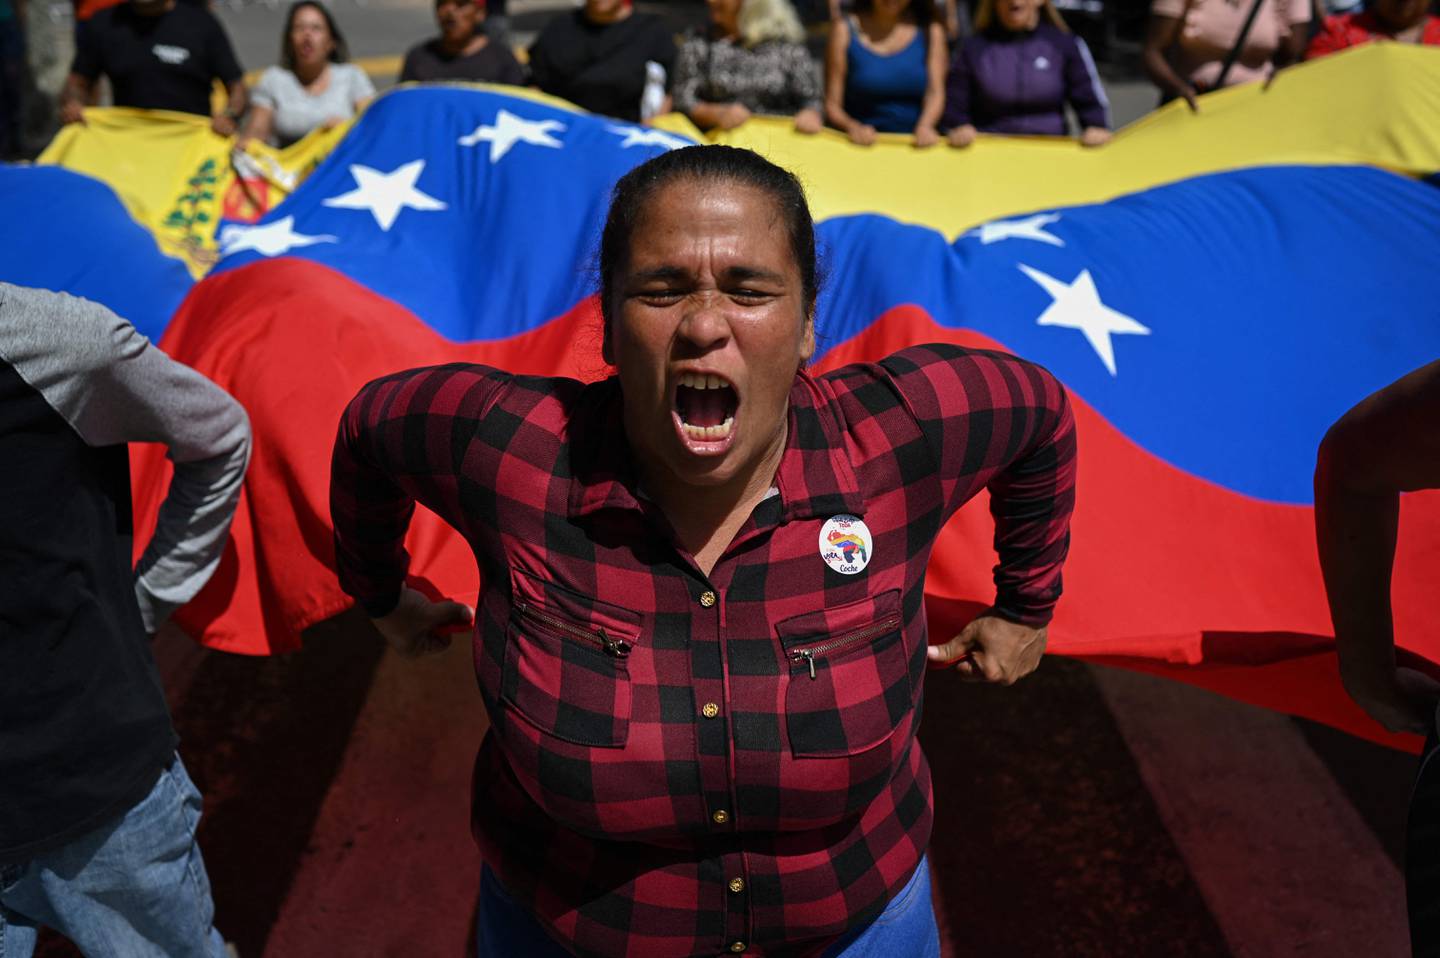 La gente se reúne frente a un colegio electoral durante un referéndum consultivo simulado sobre la soberanía venezolana sobre el Esequibo, esto fue en Caracas el pasado 19 de noviembre.